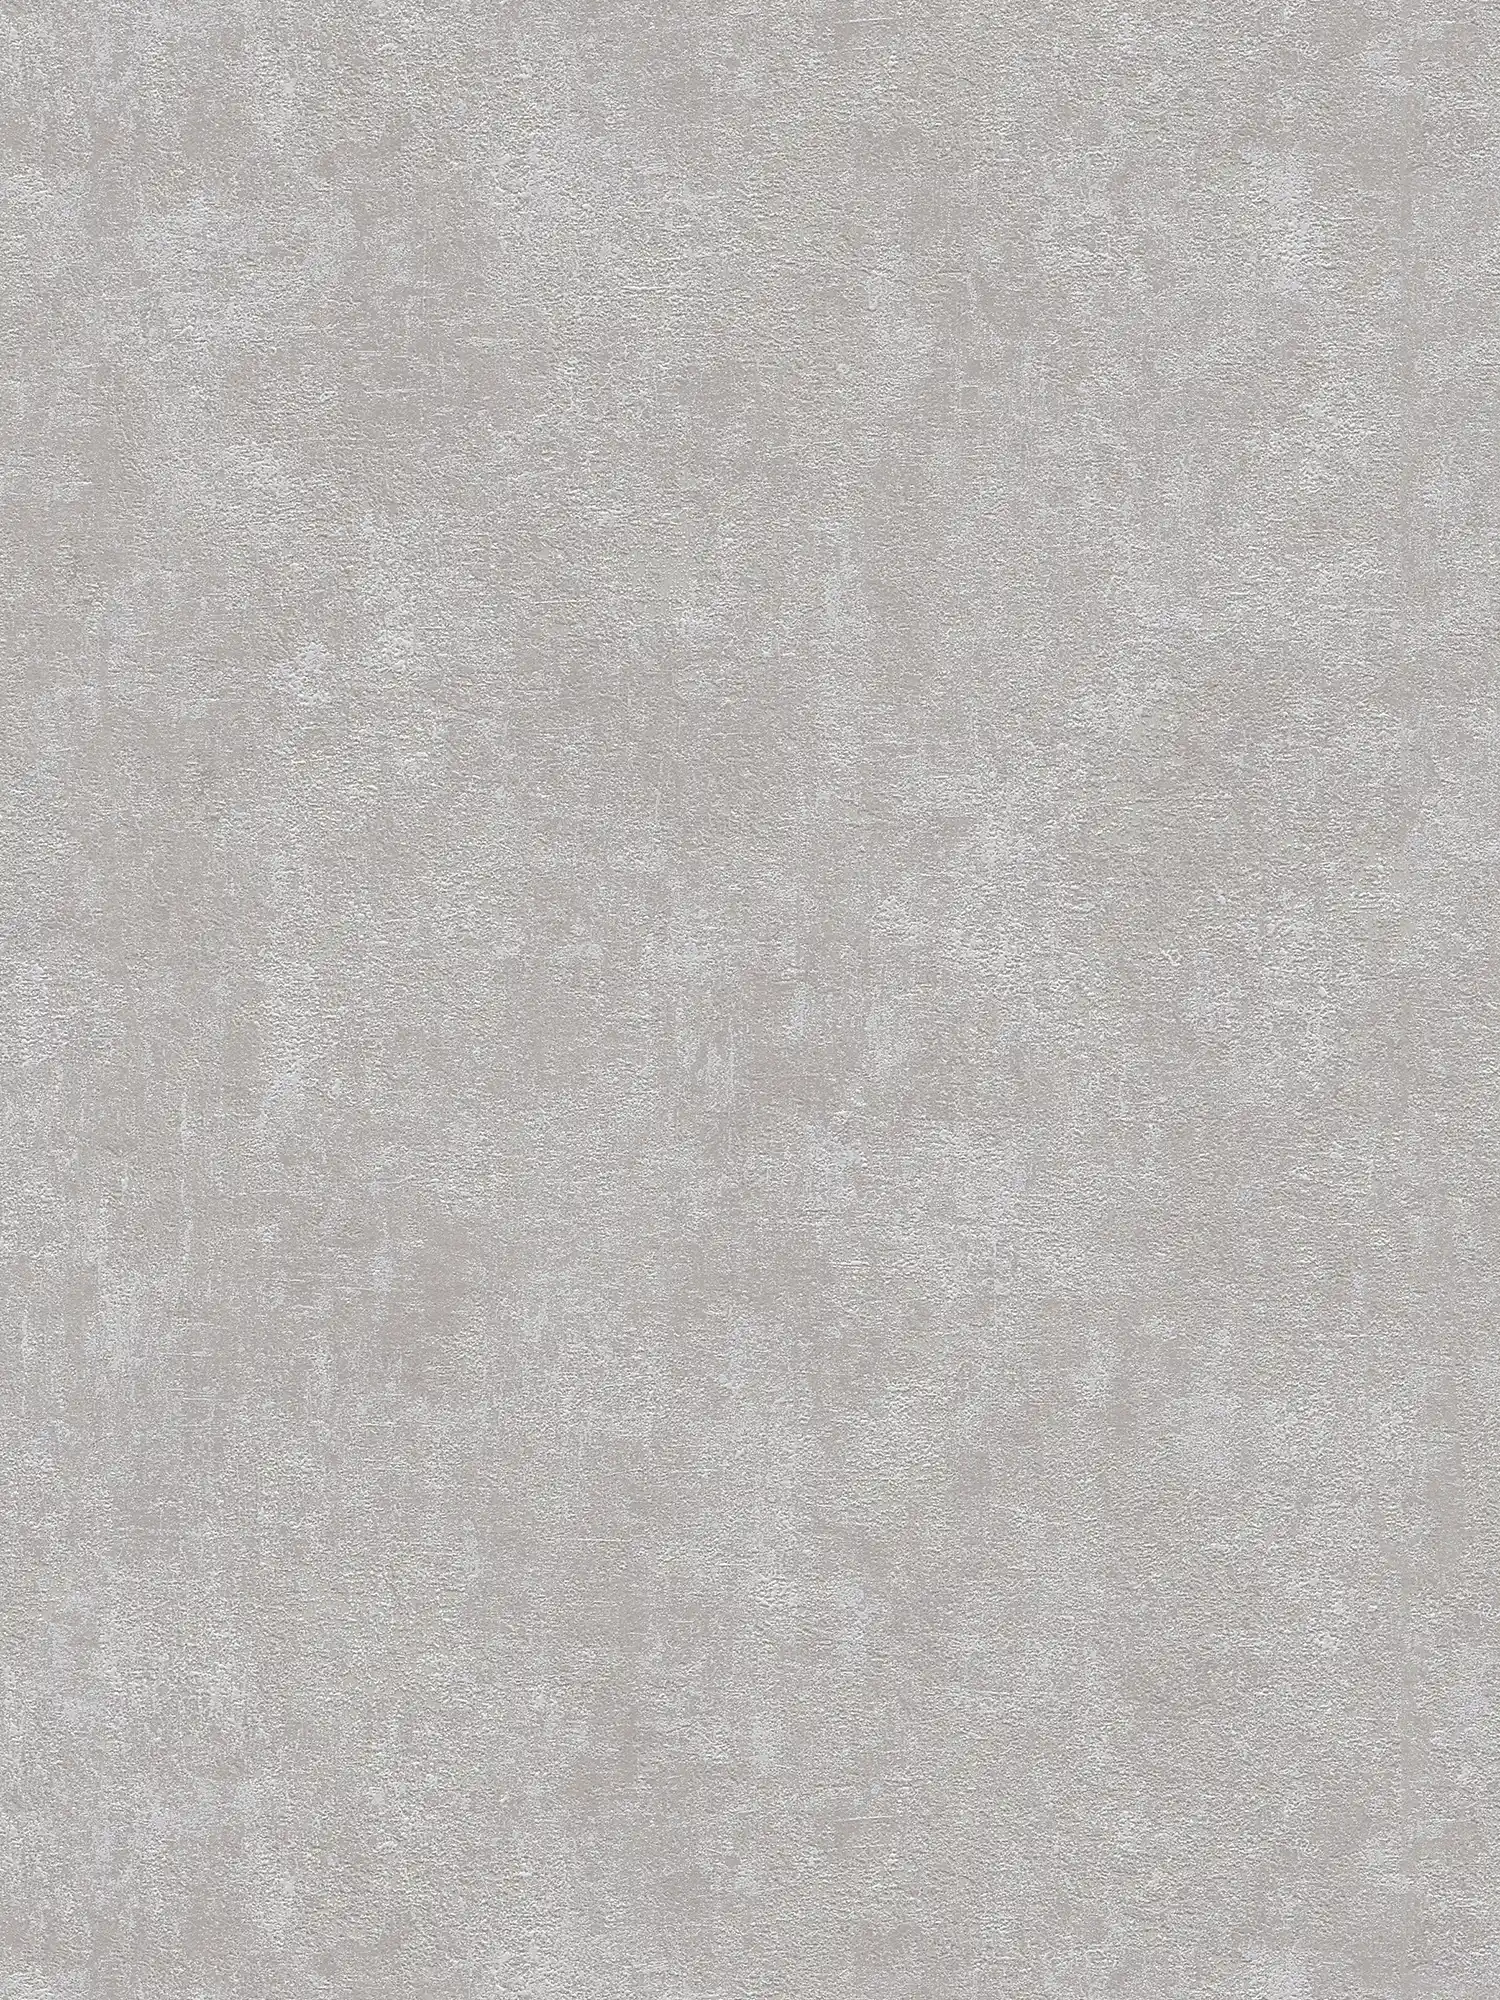 papel pintado estructura de yeso, liso y satinado - gris
